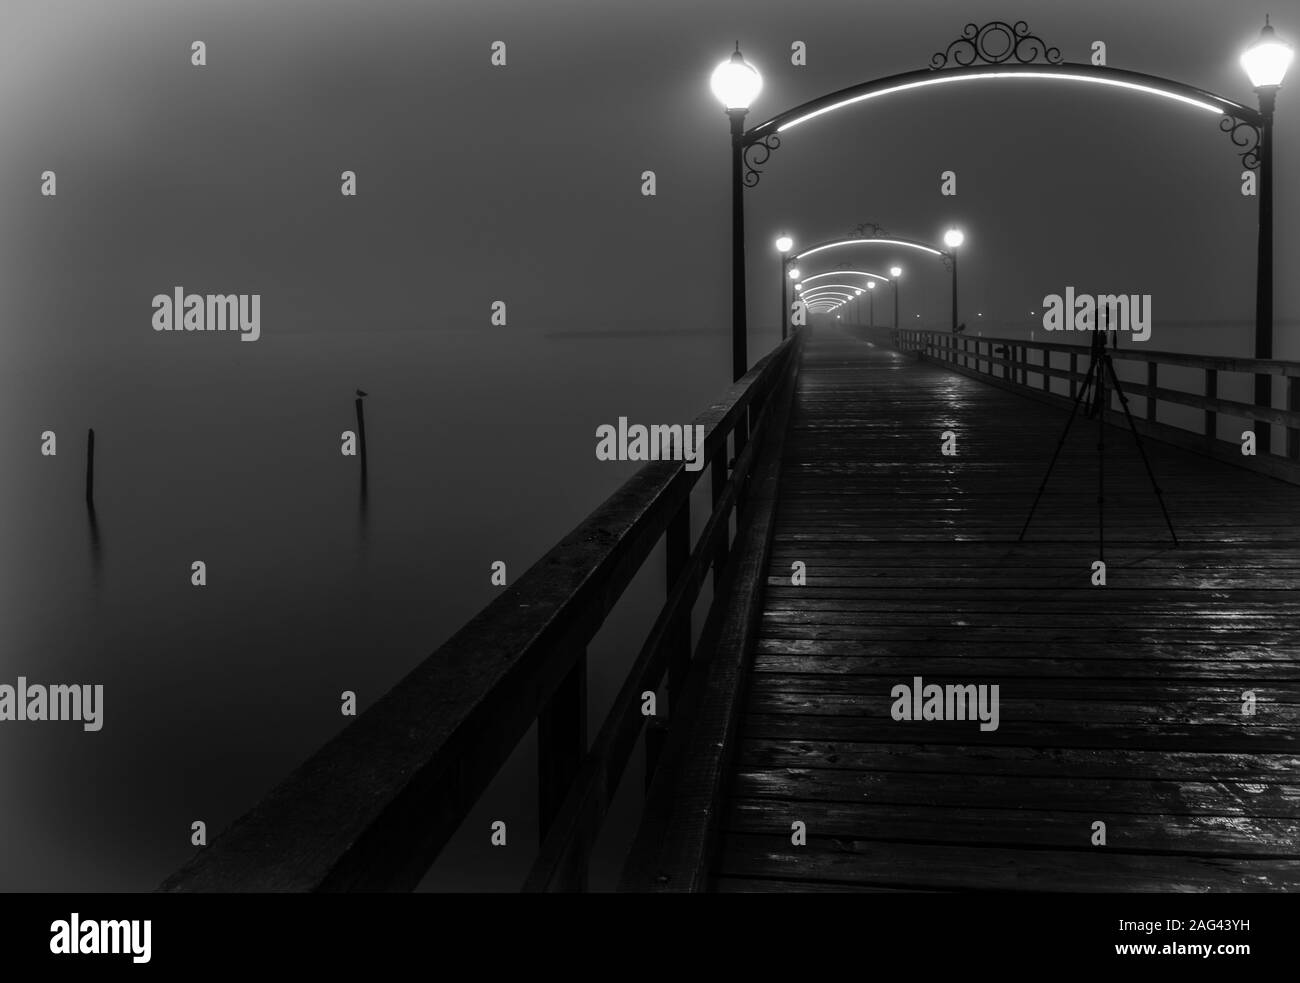 Un support de caméra au milieu d'un pont en bois avec lanternes éclairées enveloppées de brouillard Banque D'Images